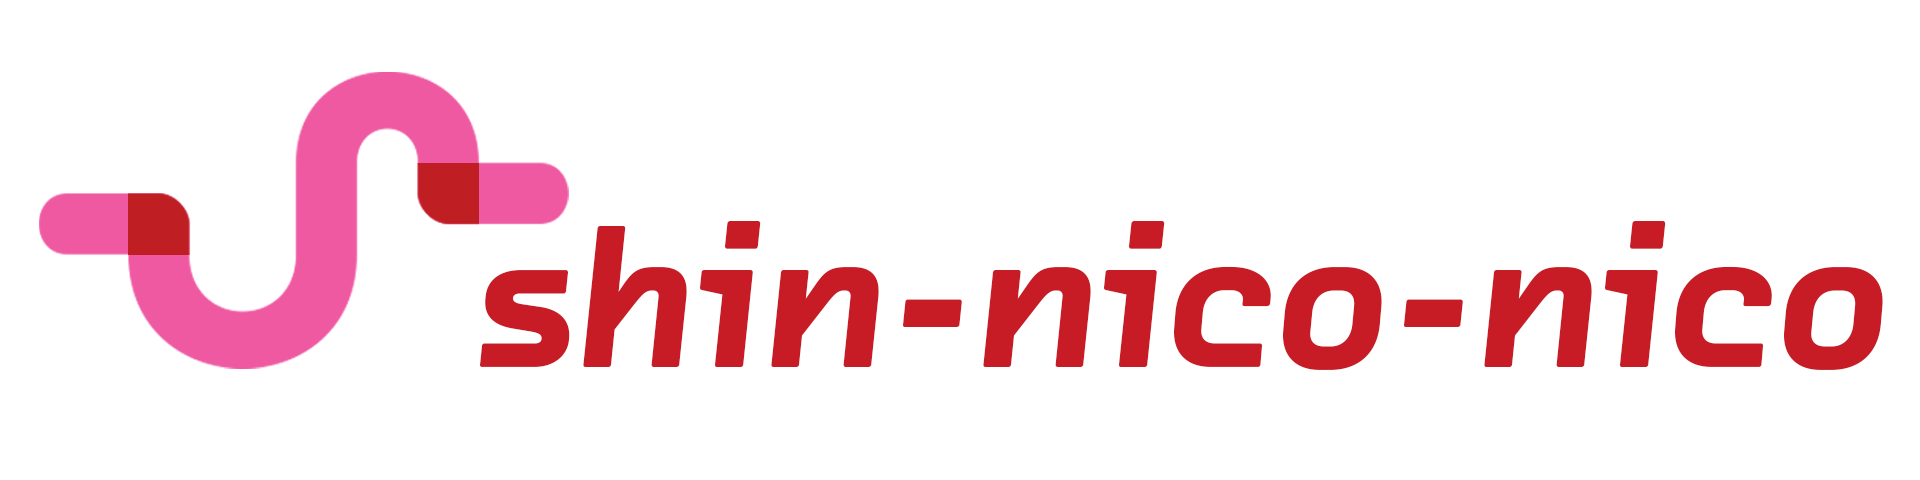 shin_niconico_logo_wiki.png